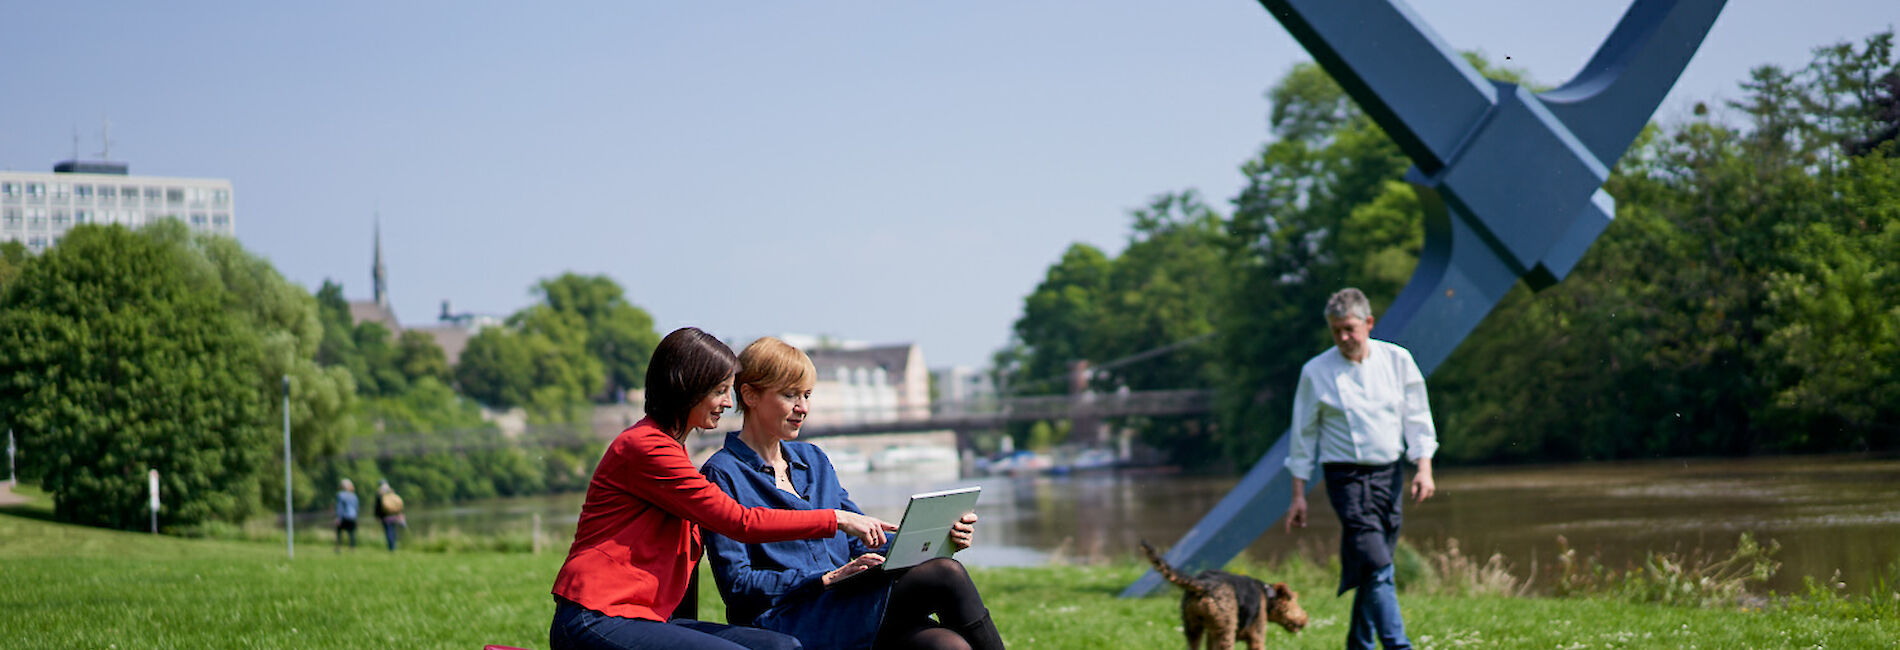 Zwei Frauen sitzen auf roten Würfeln im Gras an einem Flussufer, im Hintergrund ist die Spitzhacke Kassel zu sehen.